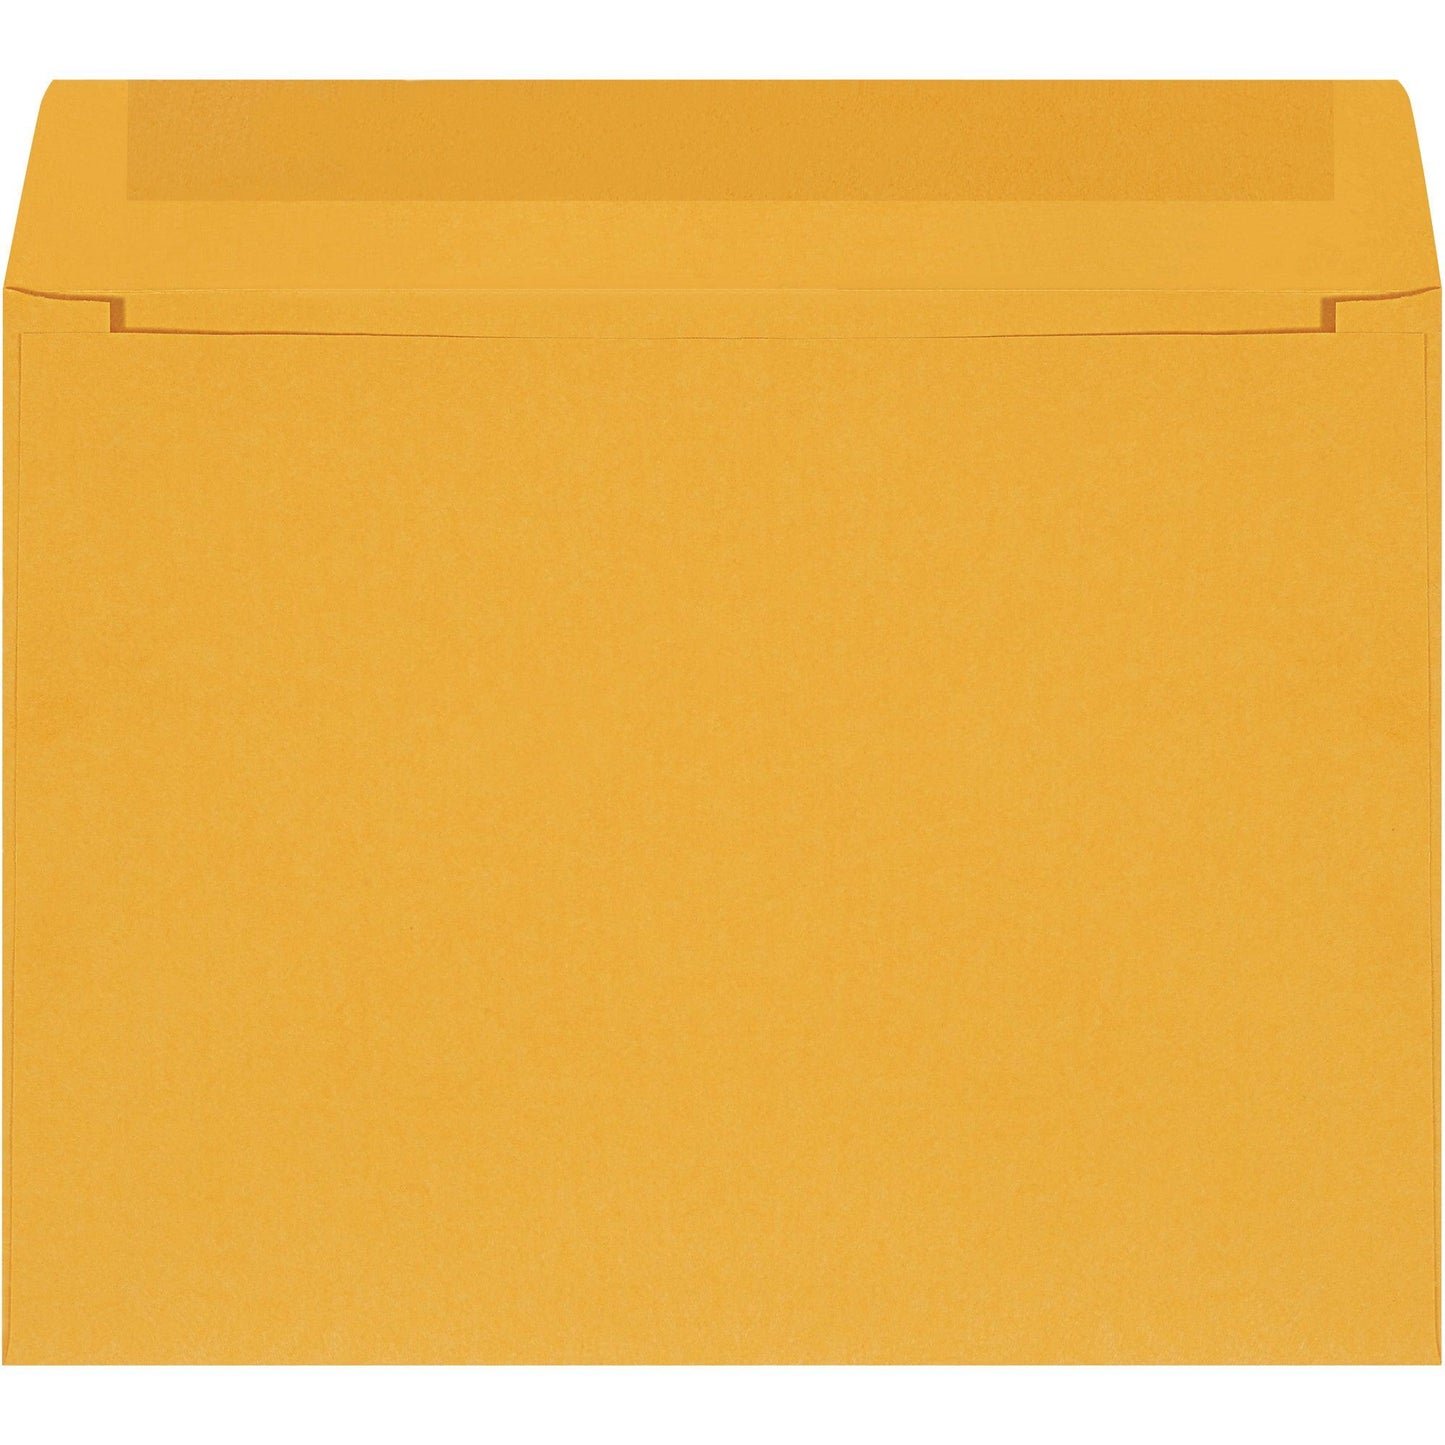 12 x 9" Kraft Self-Seal Envelopes - EN1033